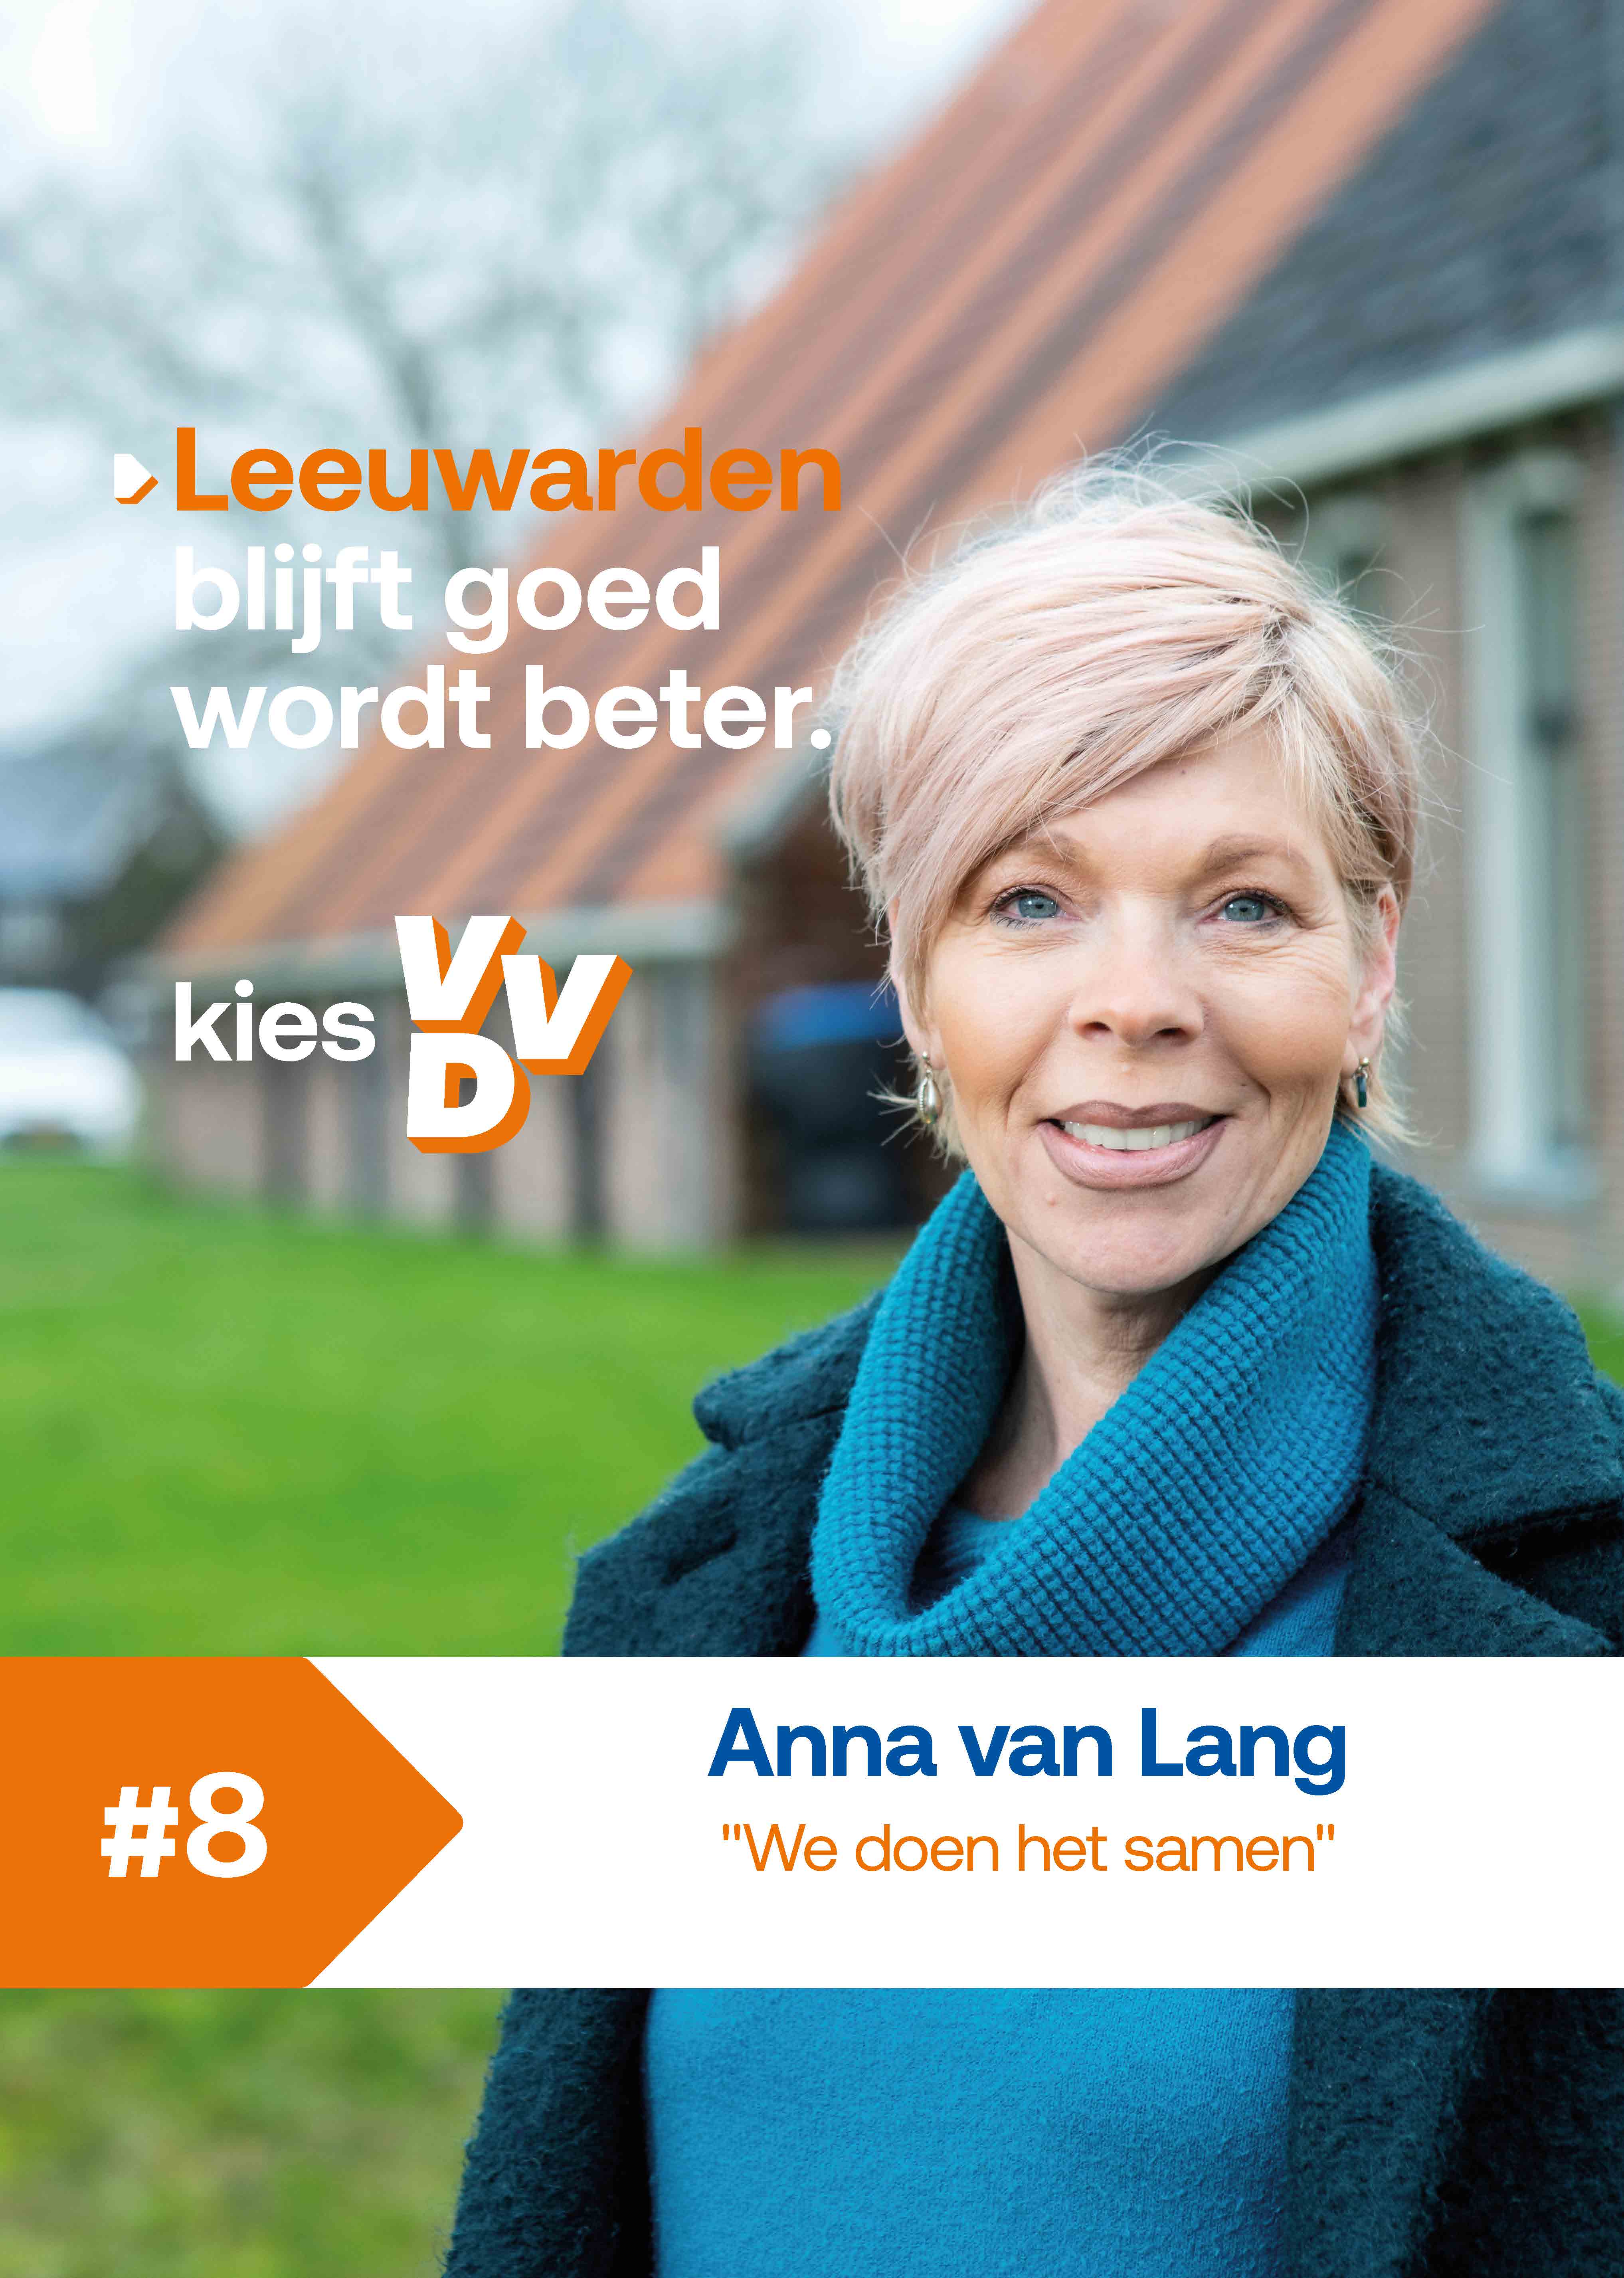 Anna van Lang